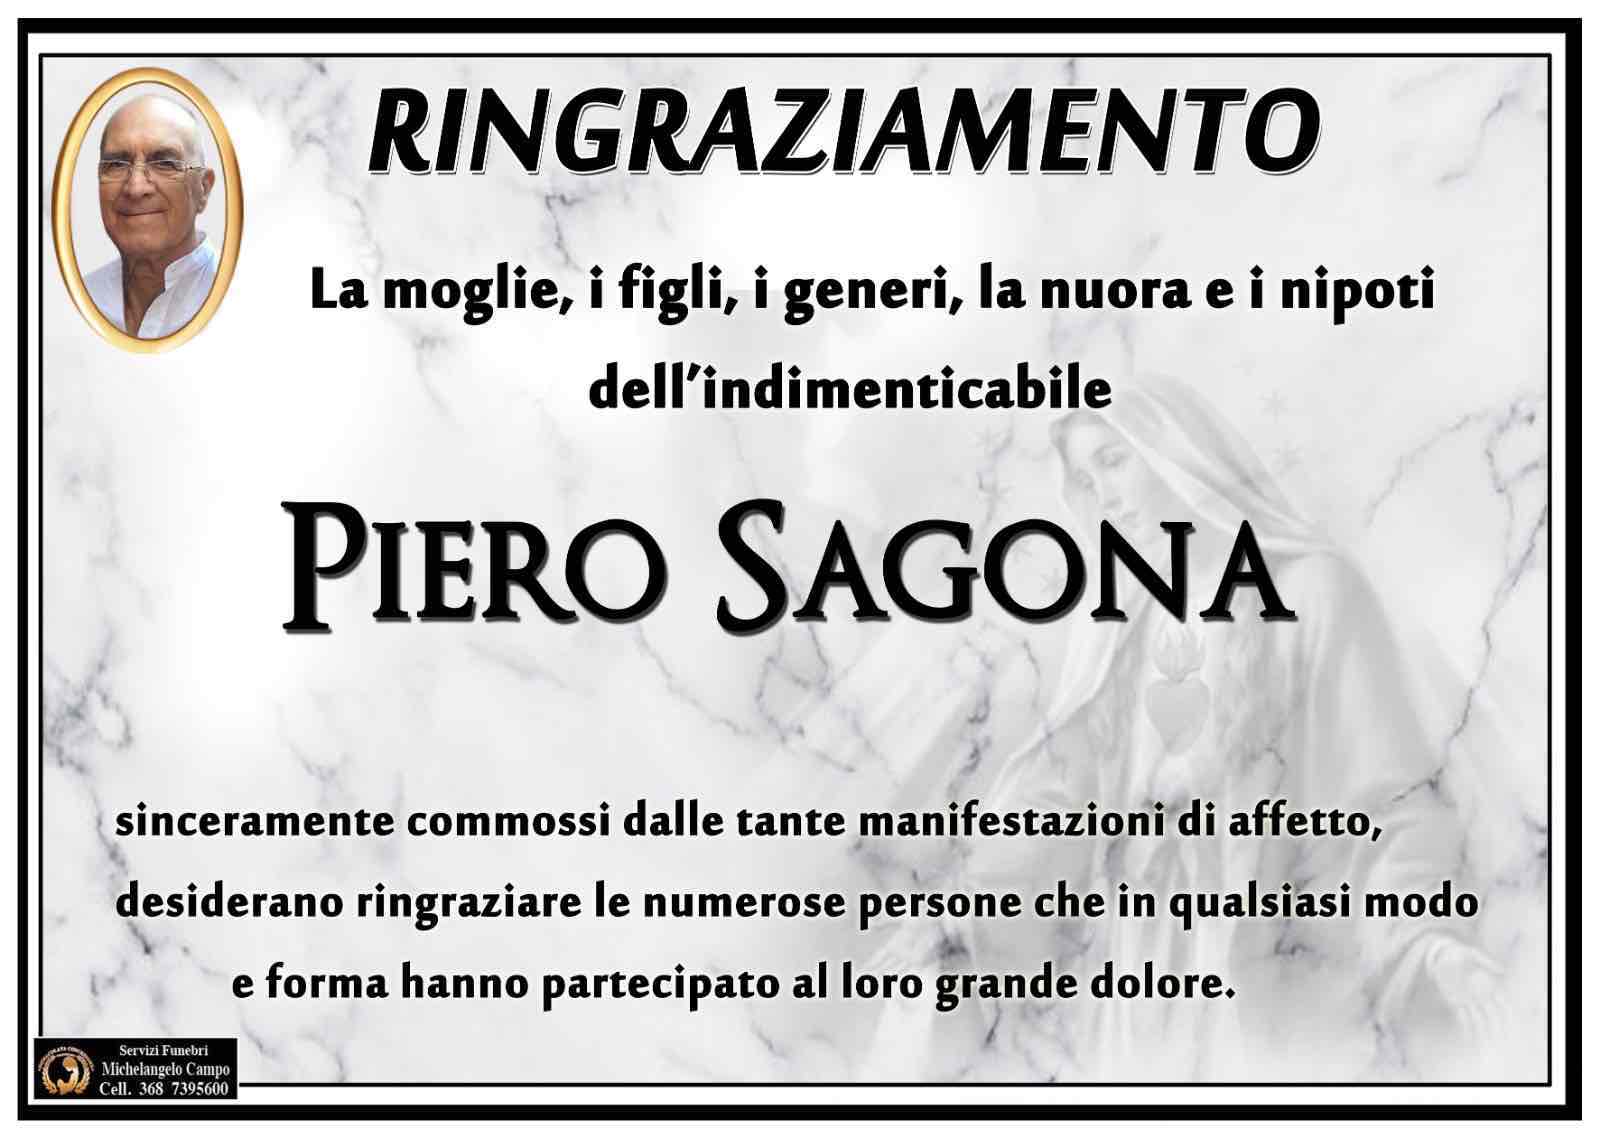 Piero Sagona